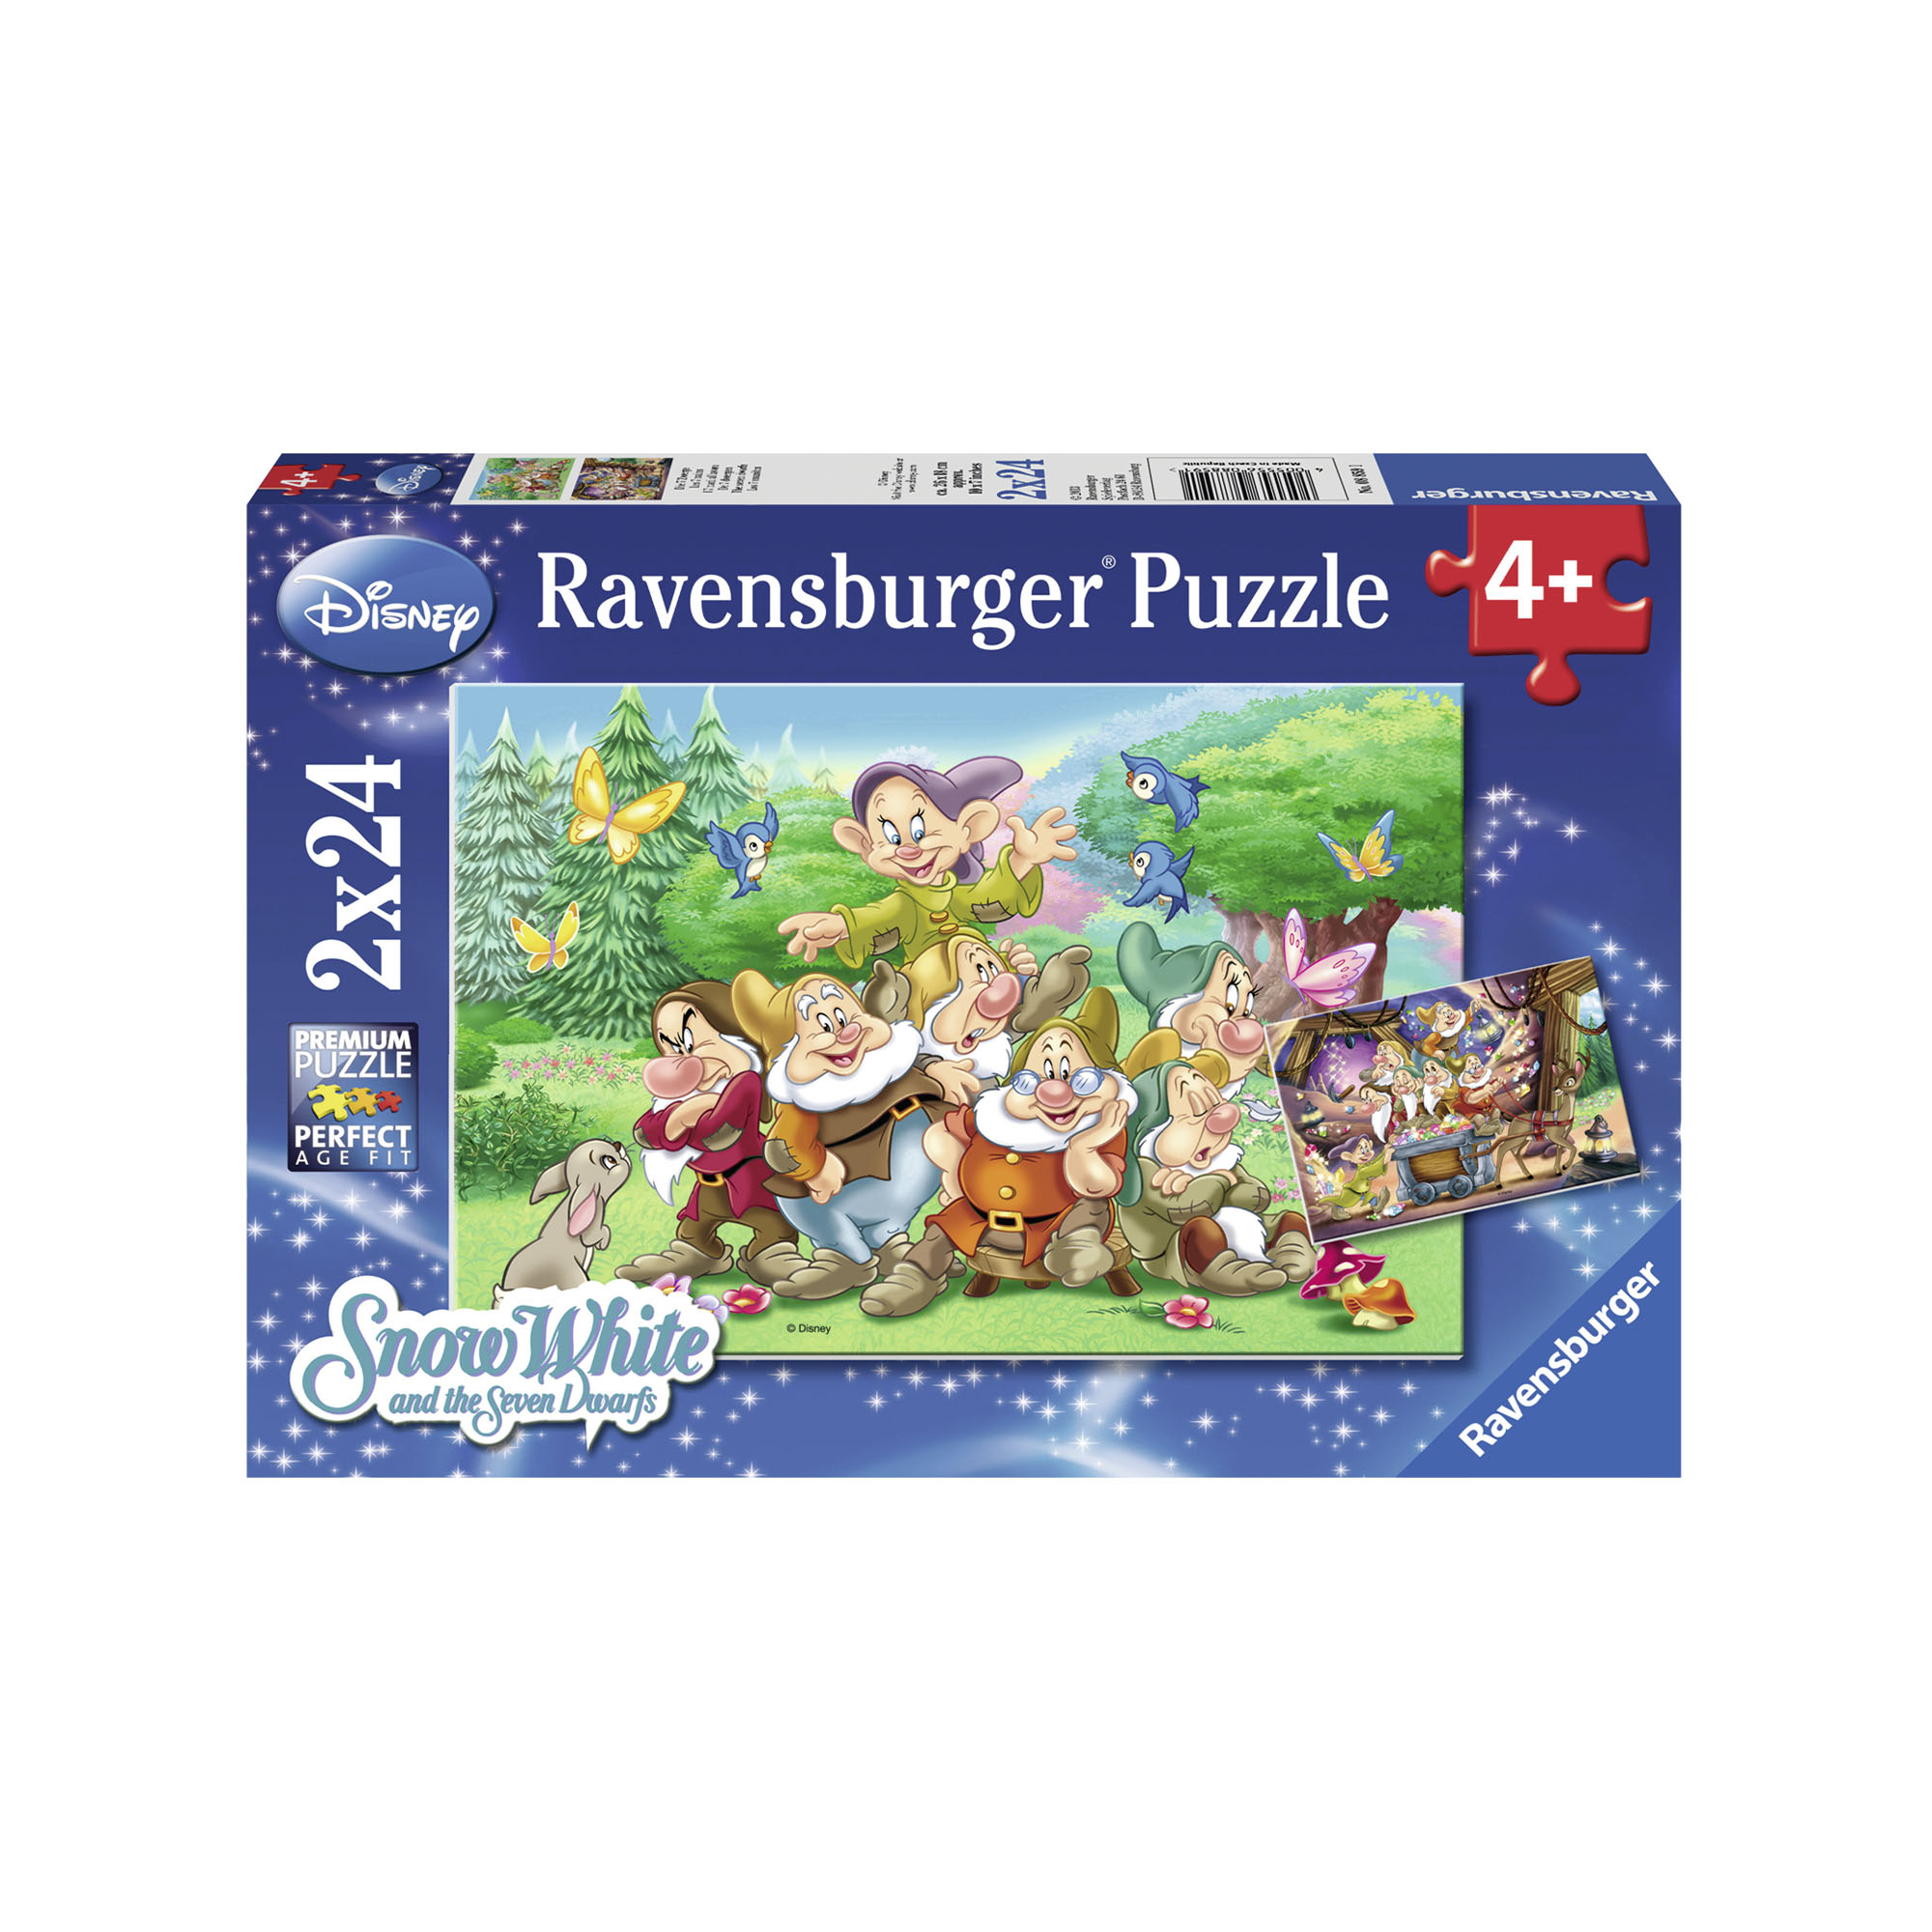 Ravensburger Puzzle 2x24 pezzi 08859 - I sette nani, , large